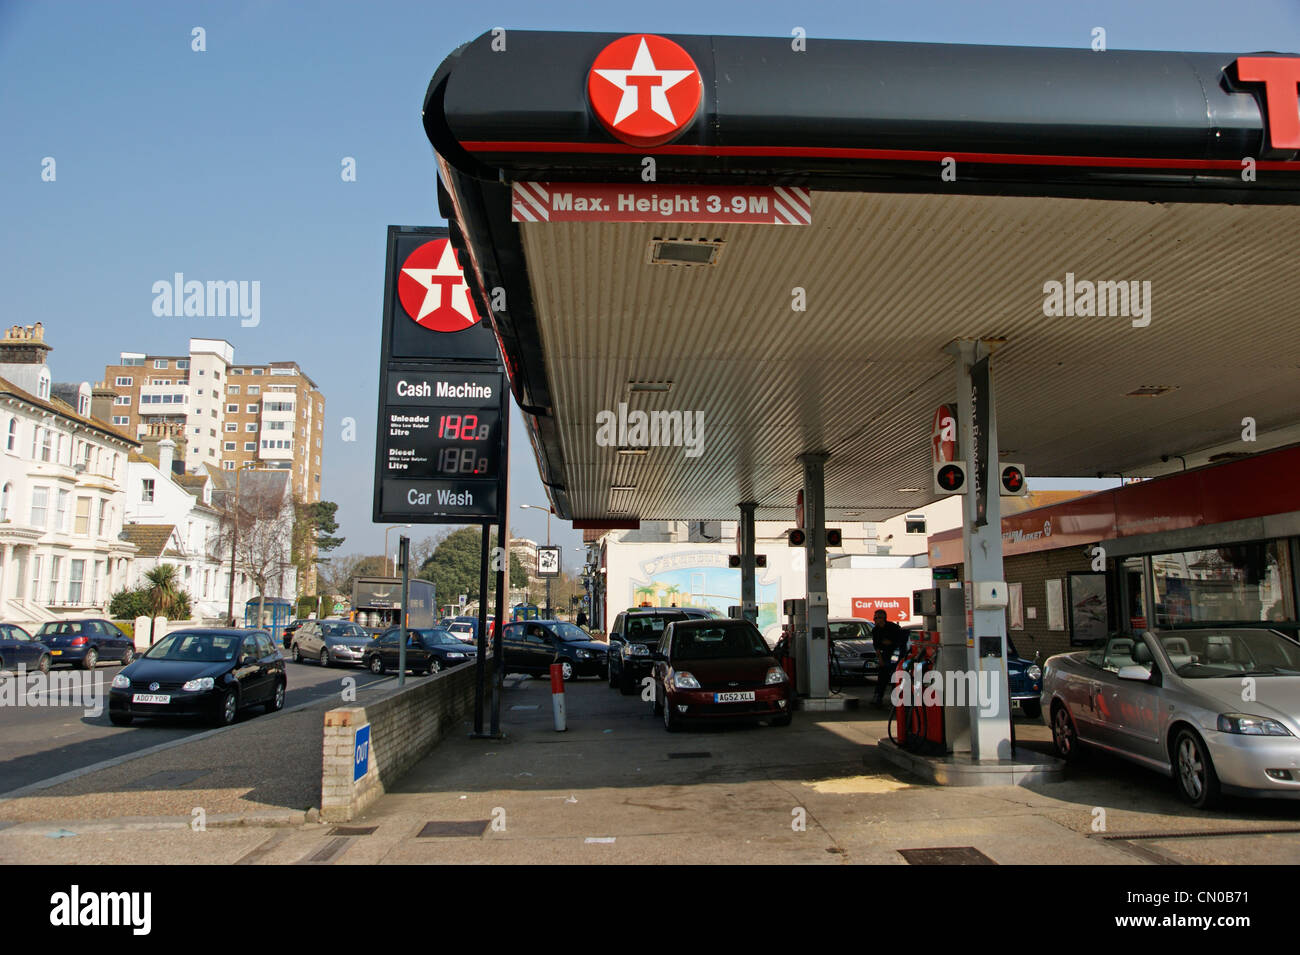 Crisis de combustible - estación de servicio Texaco garaje patio lleno de coches con colas de vehículos en la carretera Foto de stock